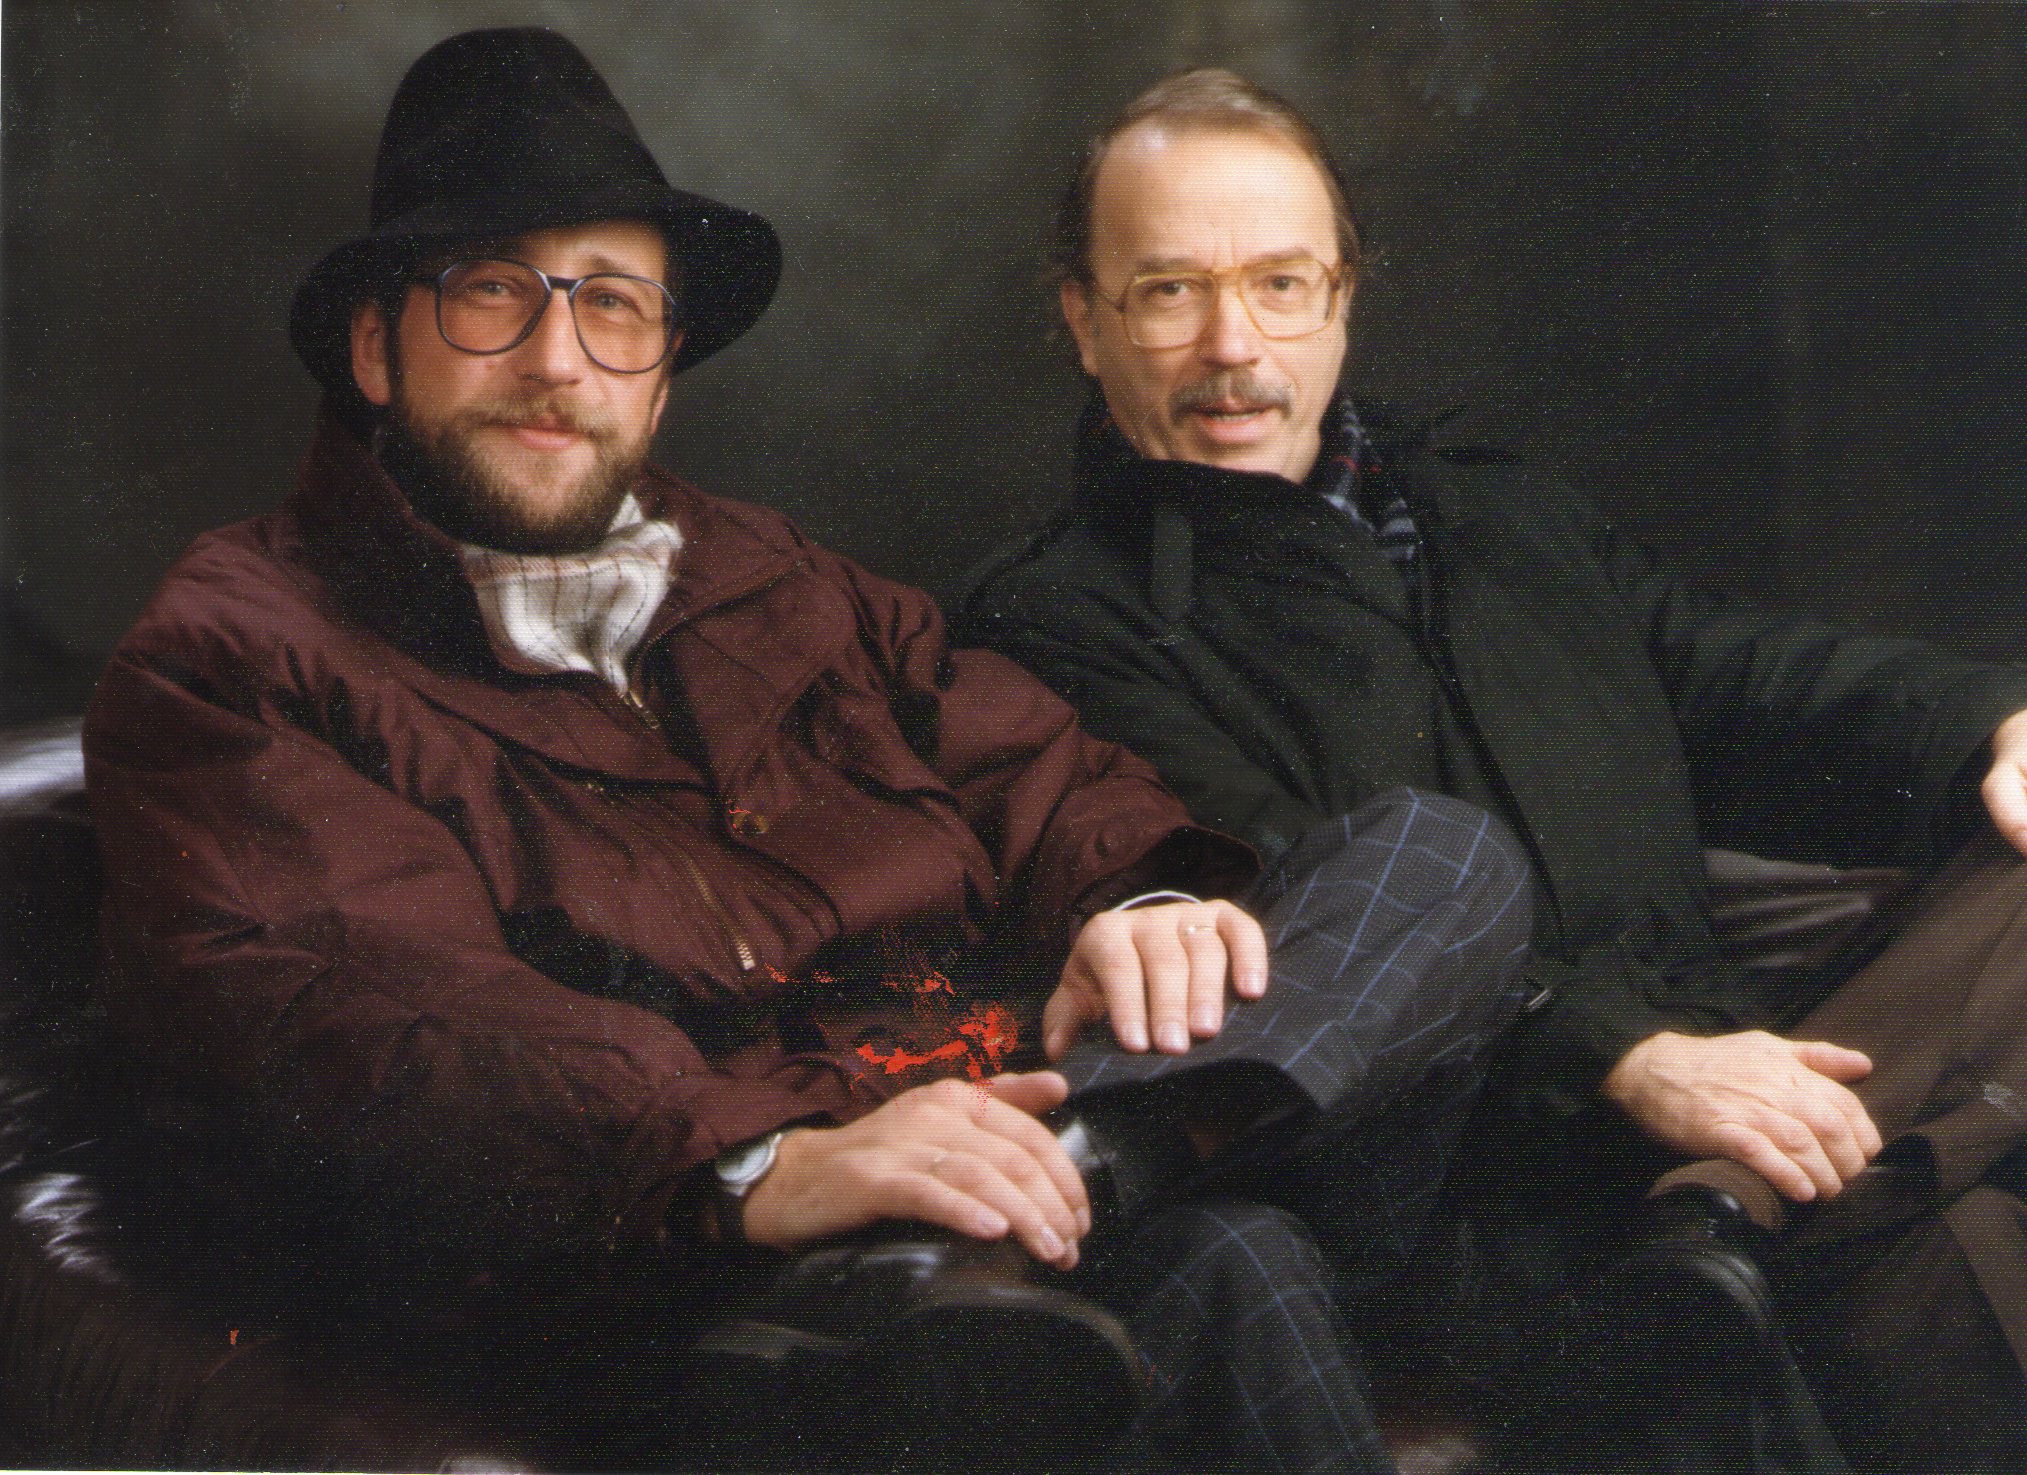 Walter Kempowski mit B. M. B. nach einer Autorenlesung in Weiden am 26. November 1988